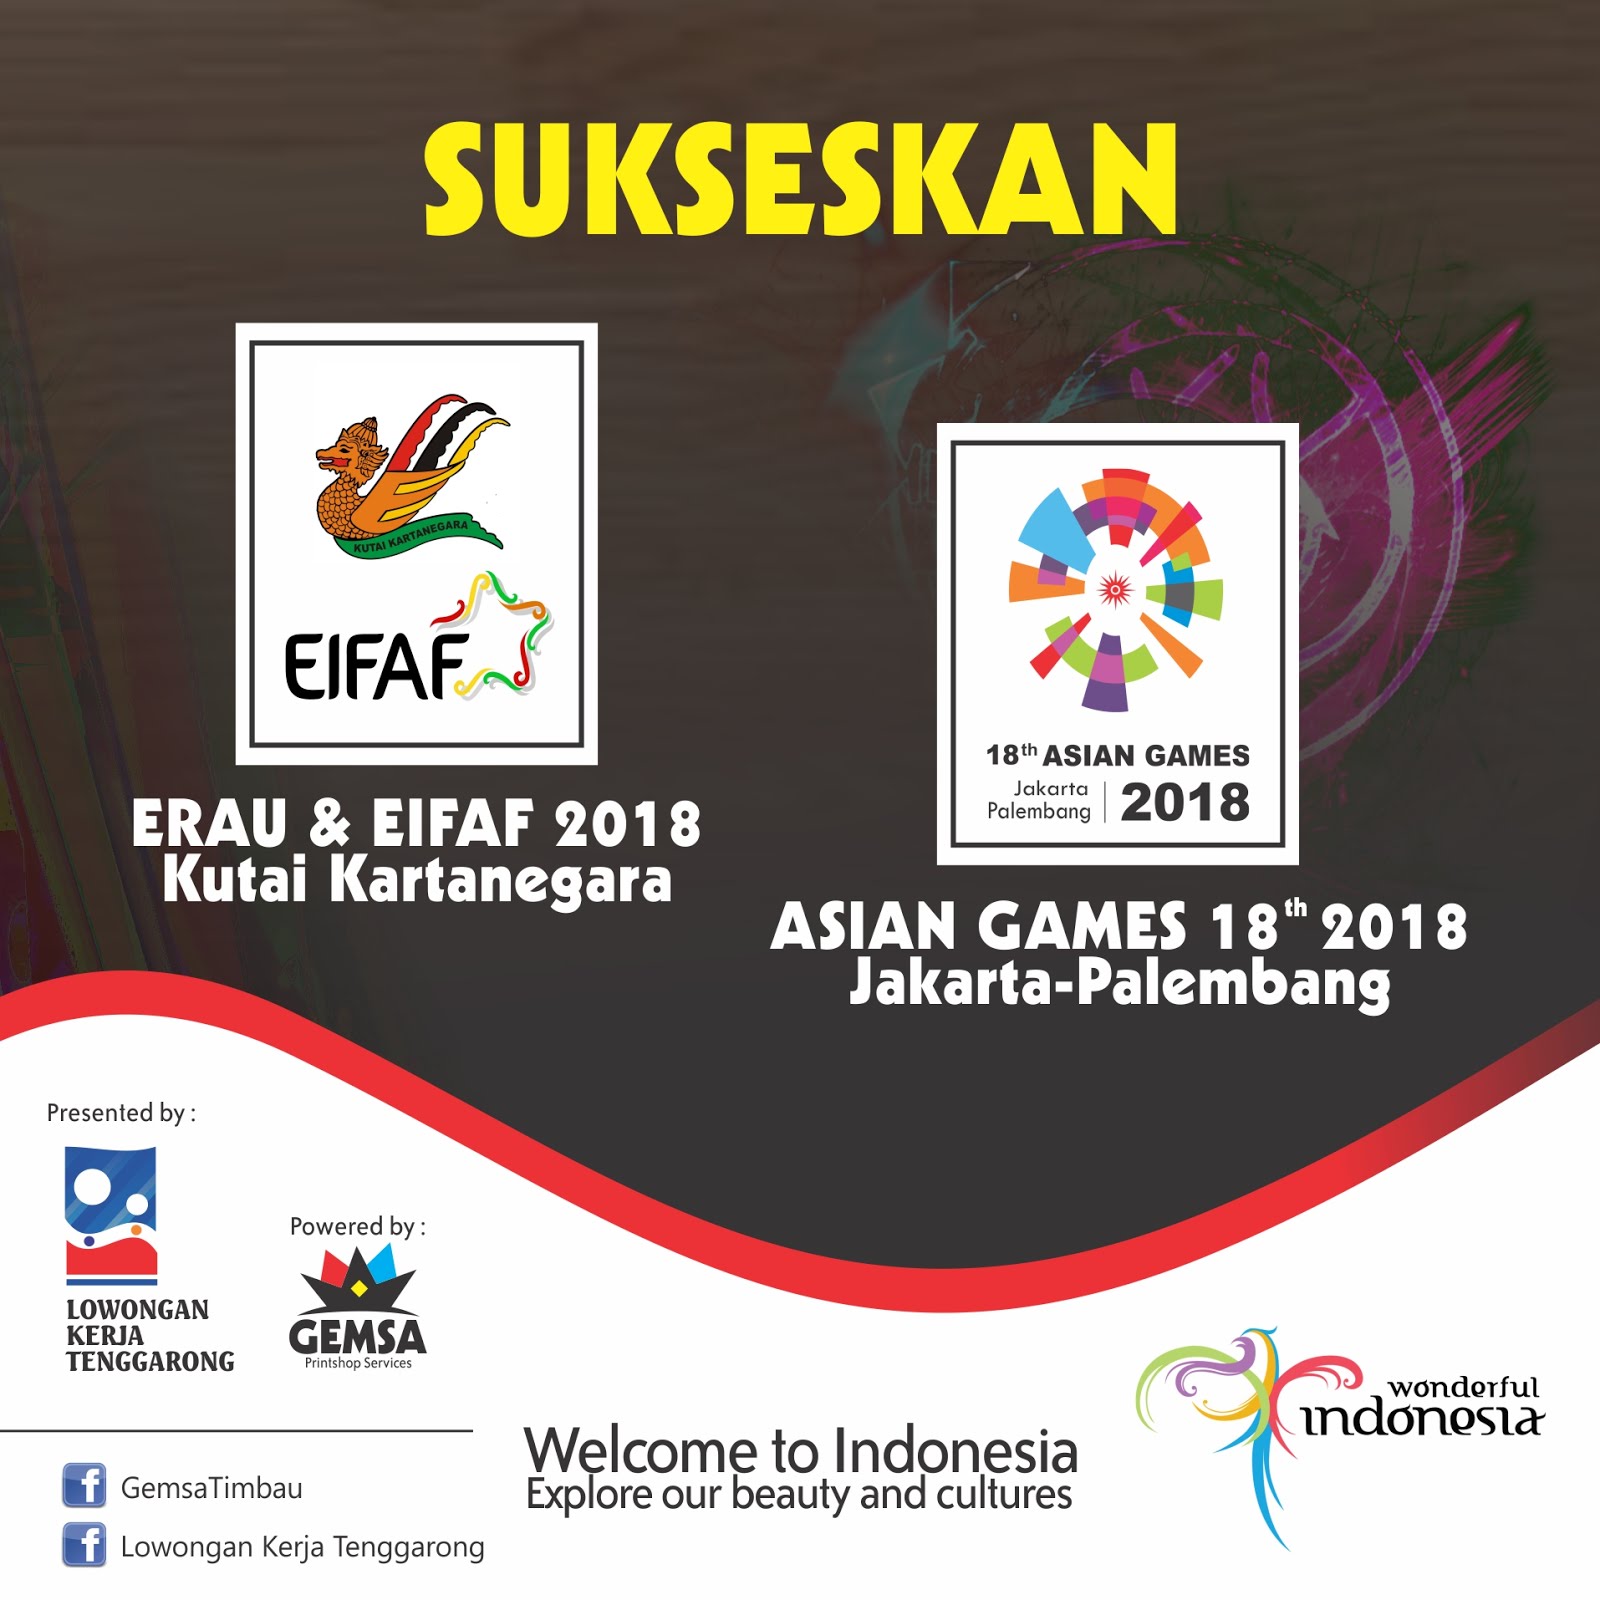 ERAU EIFAF & ASIAN GAMES 2018